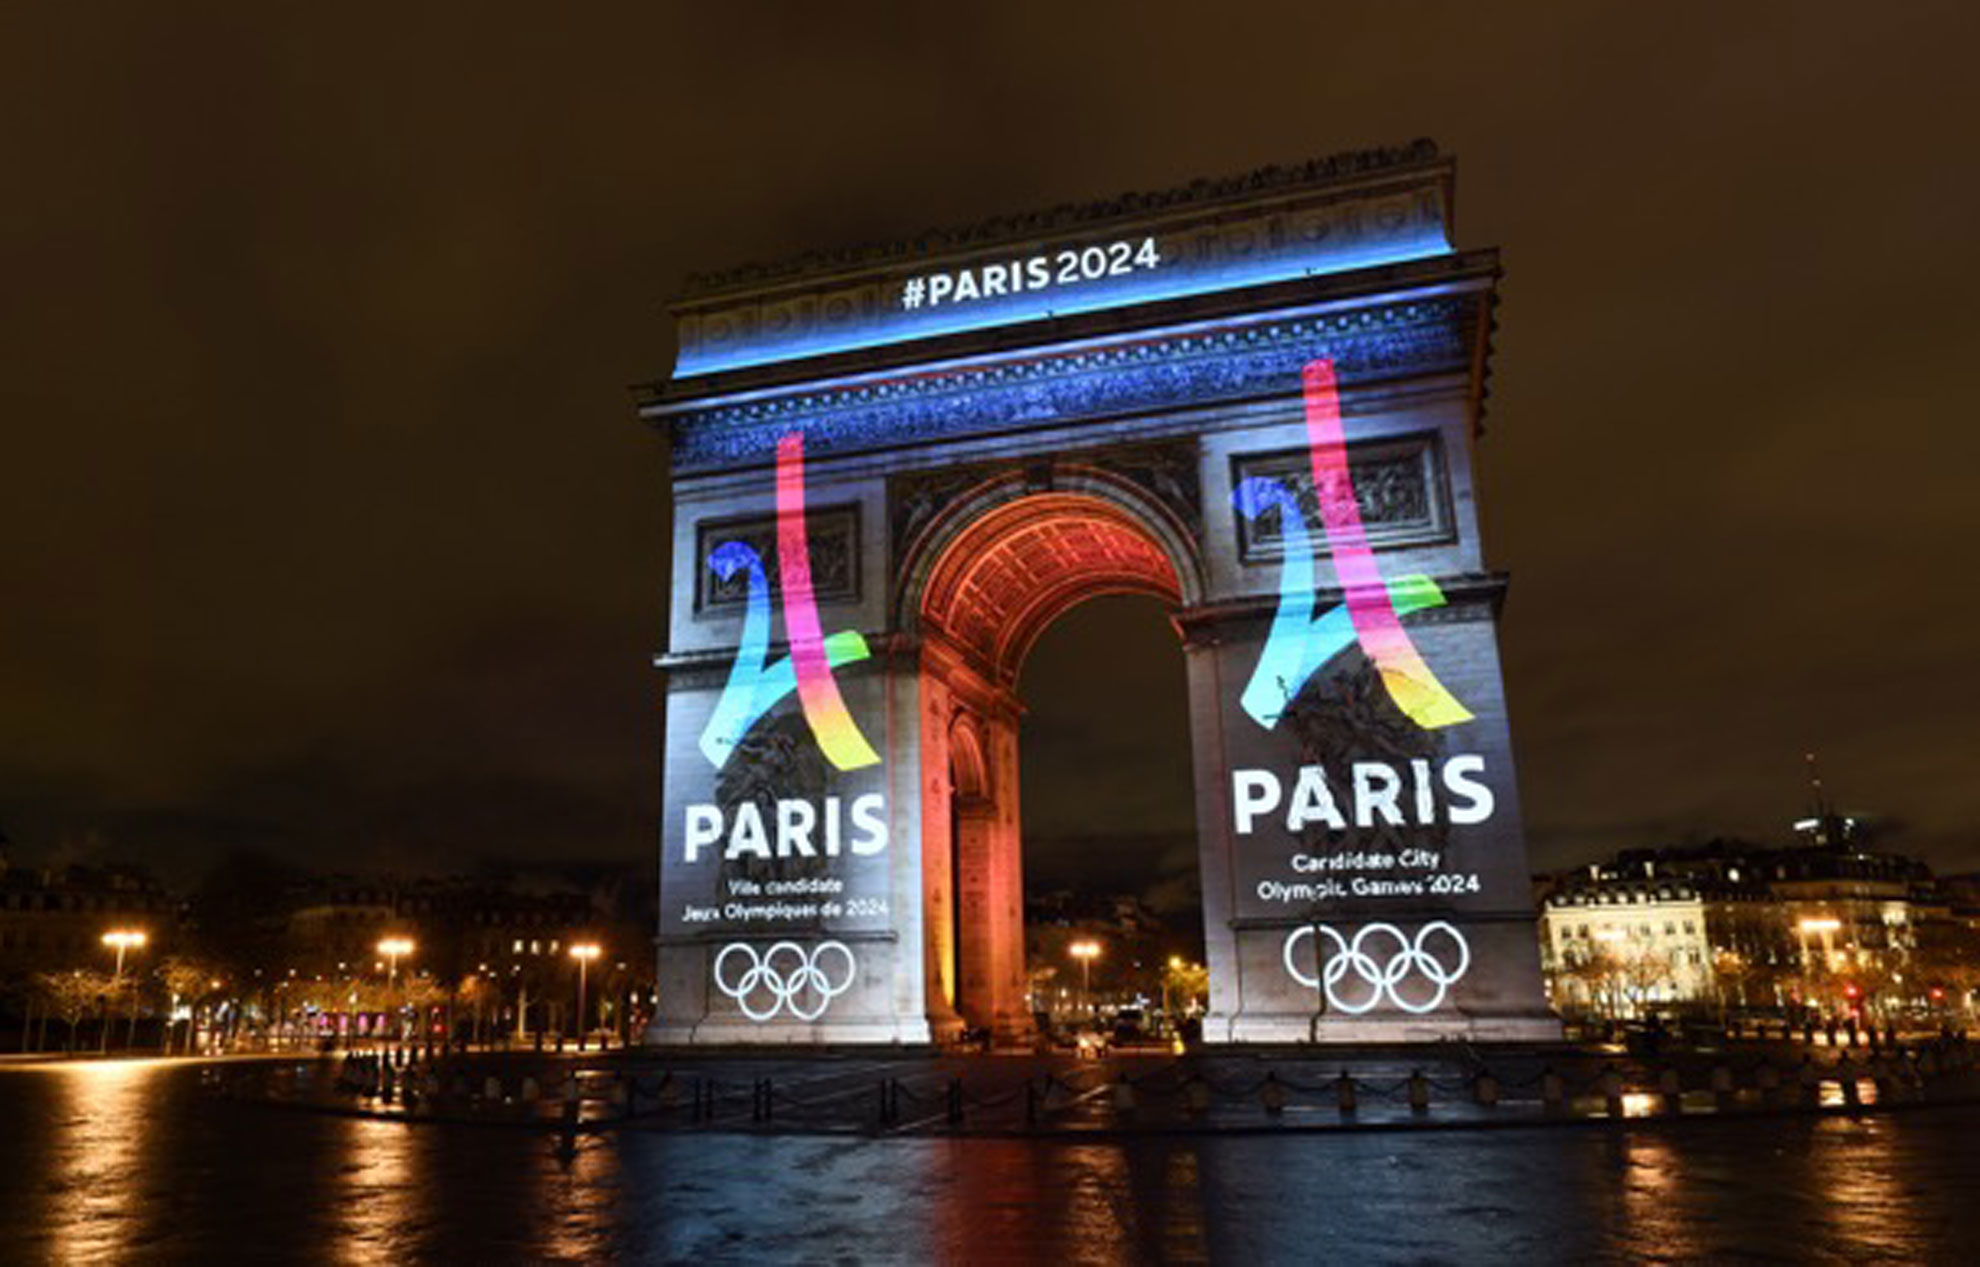 73 من الفرنسيين يؤيدون طلب باريس لاستضافة أولمبياد 2024